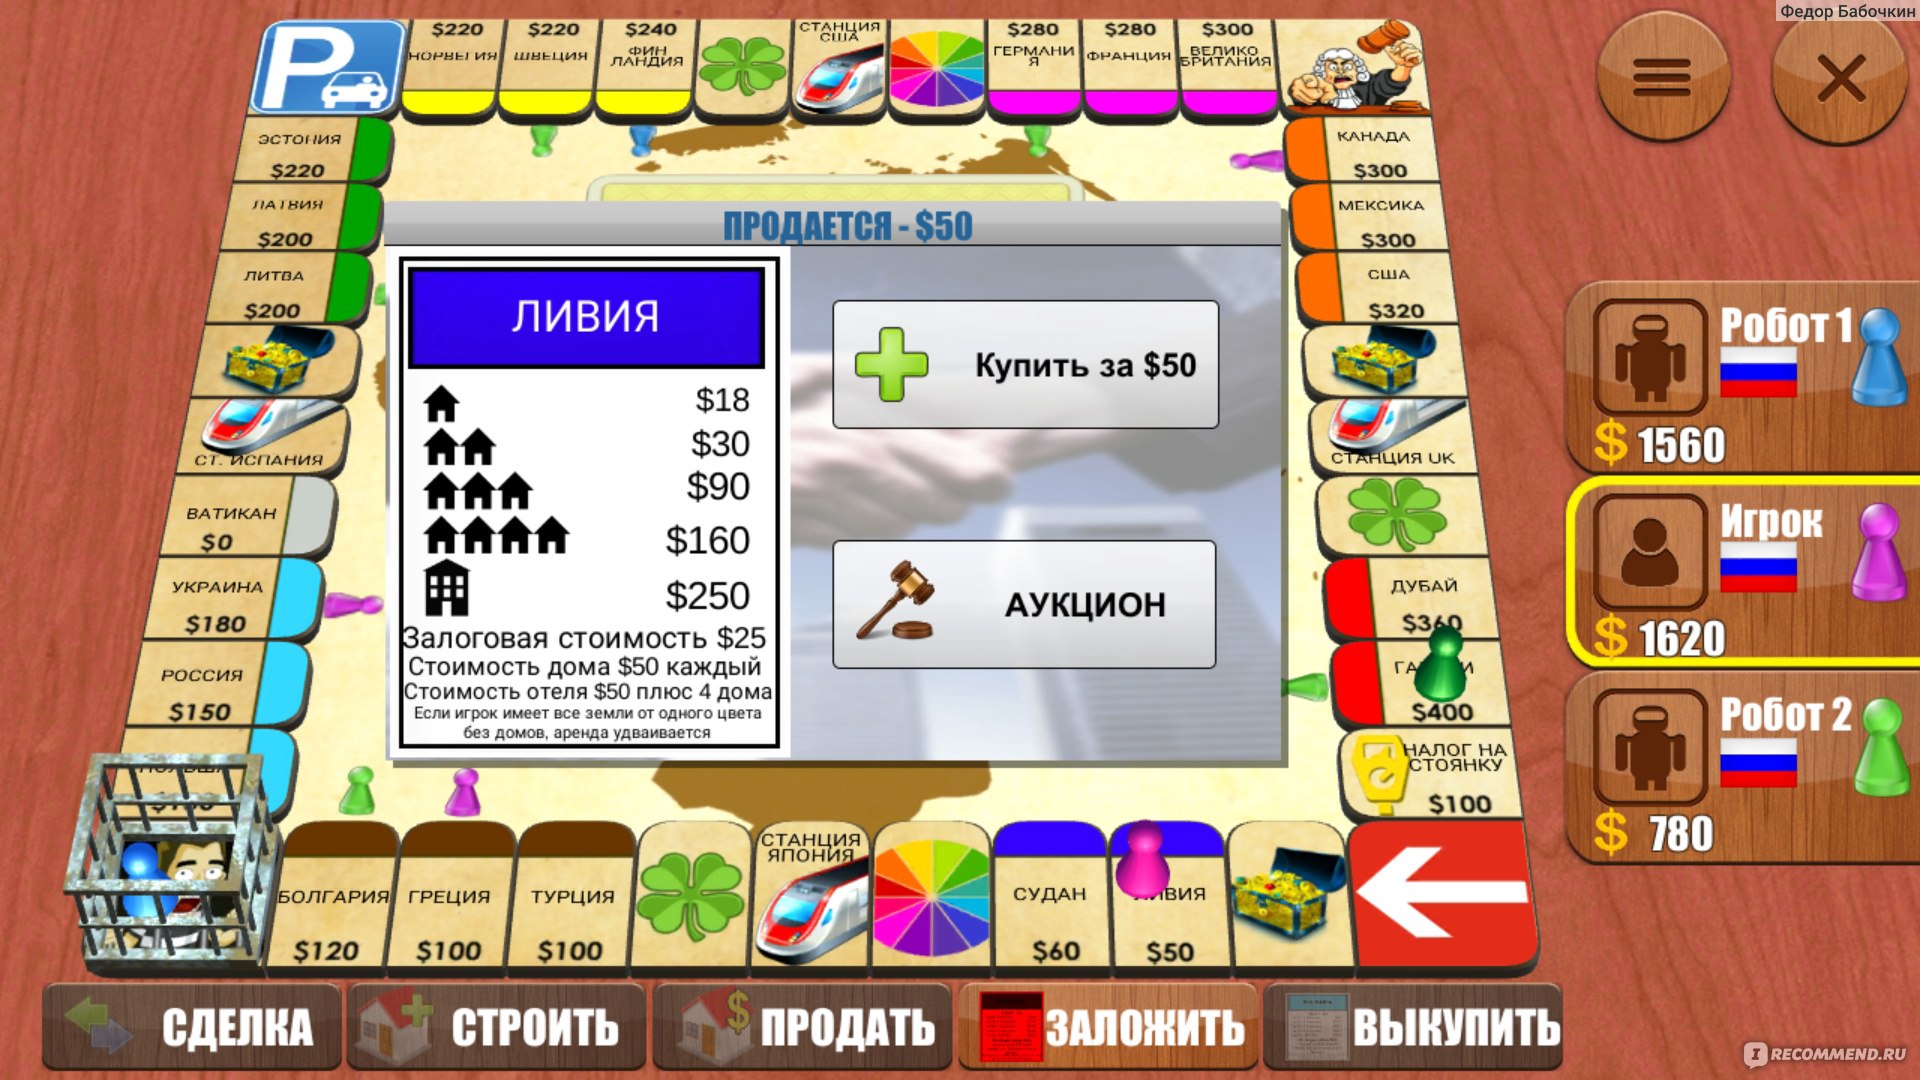 играть в монополию с банковскими картами онлайн на русском